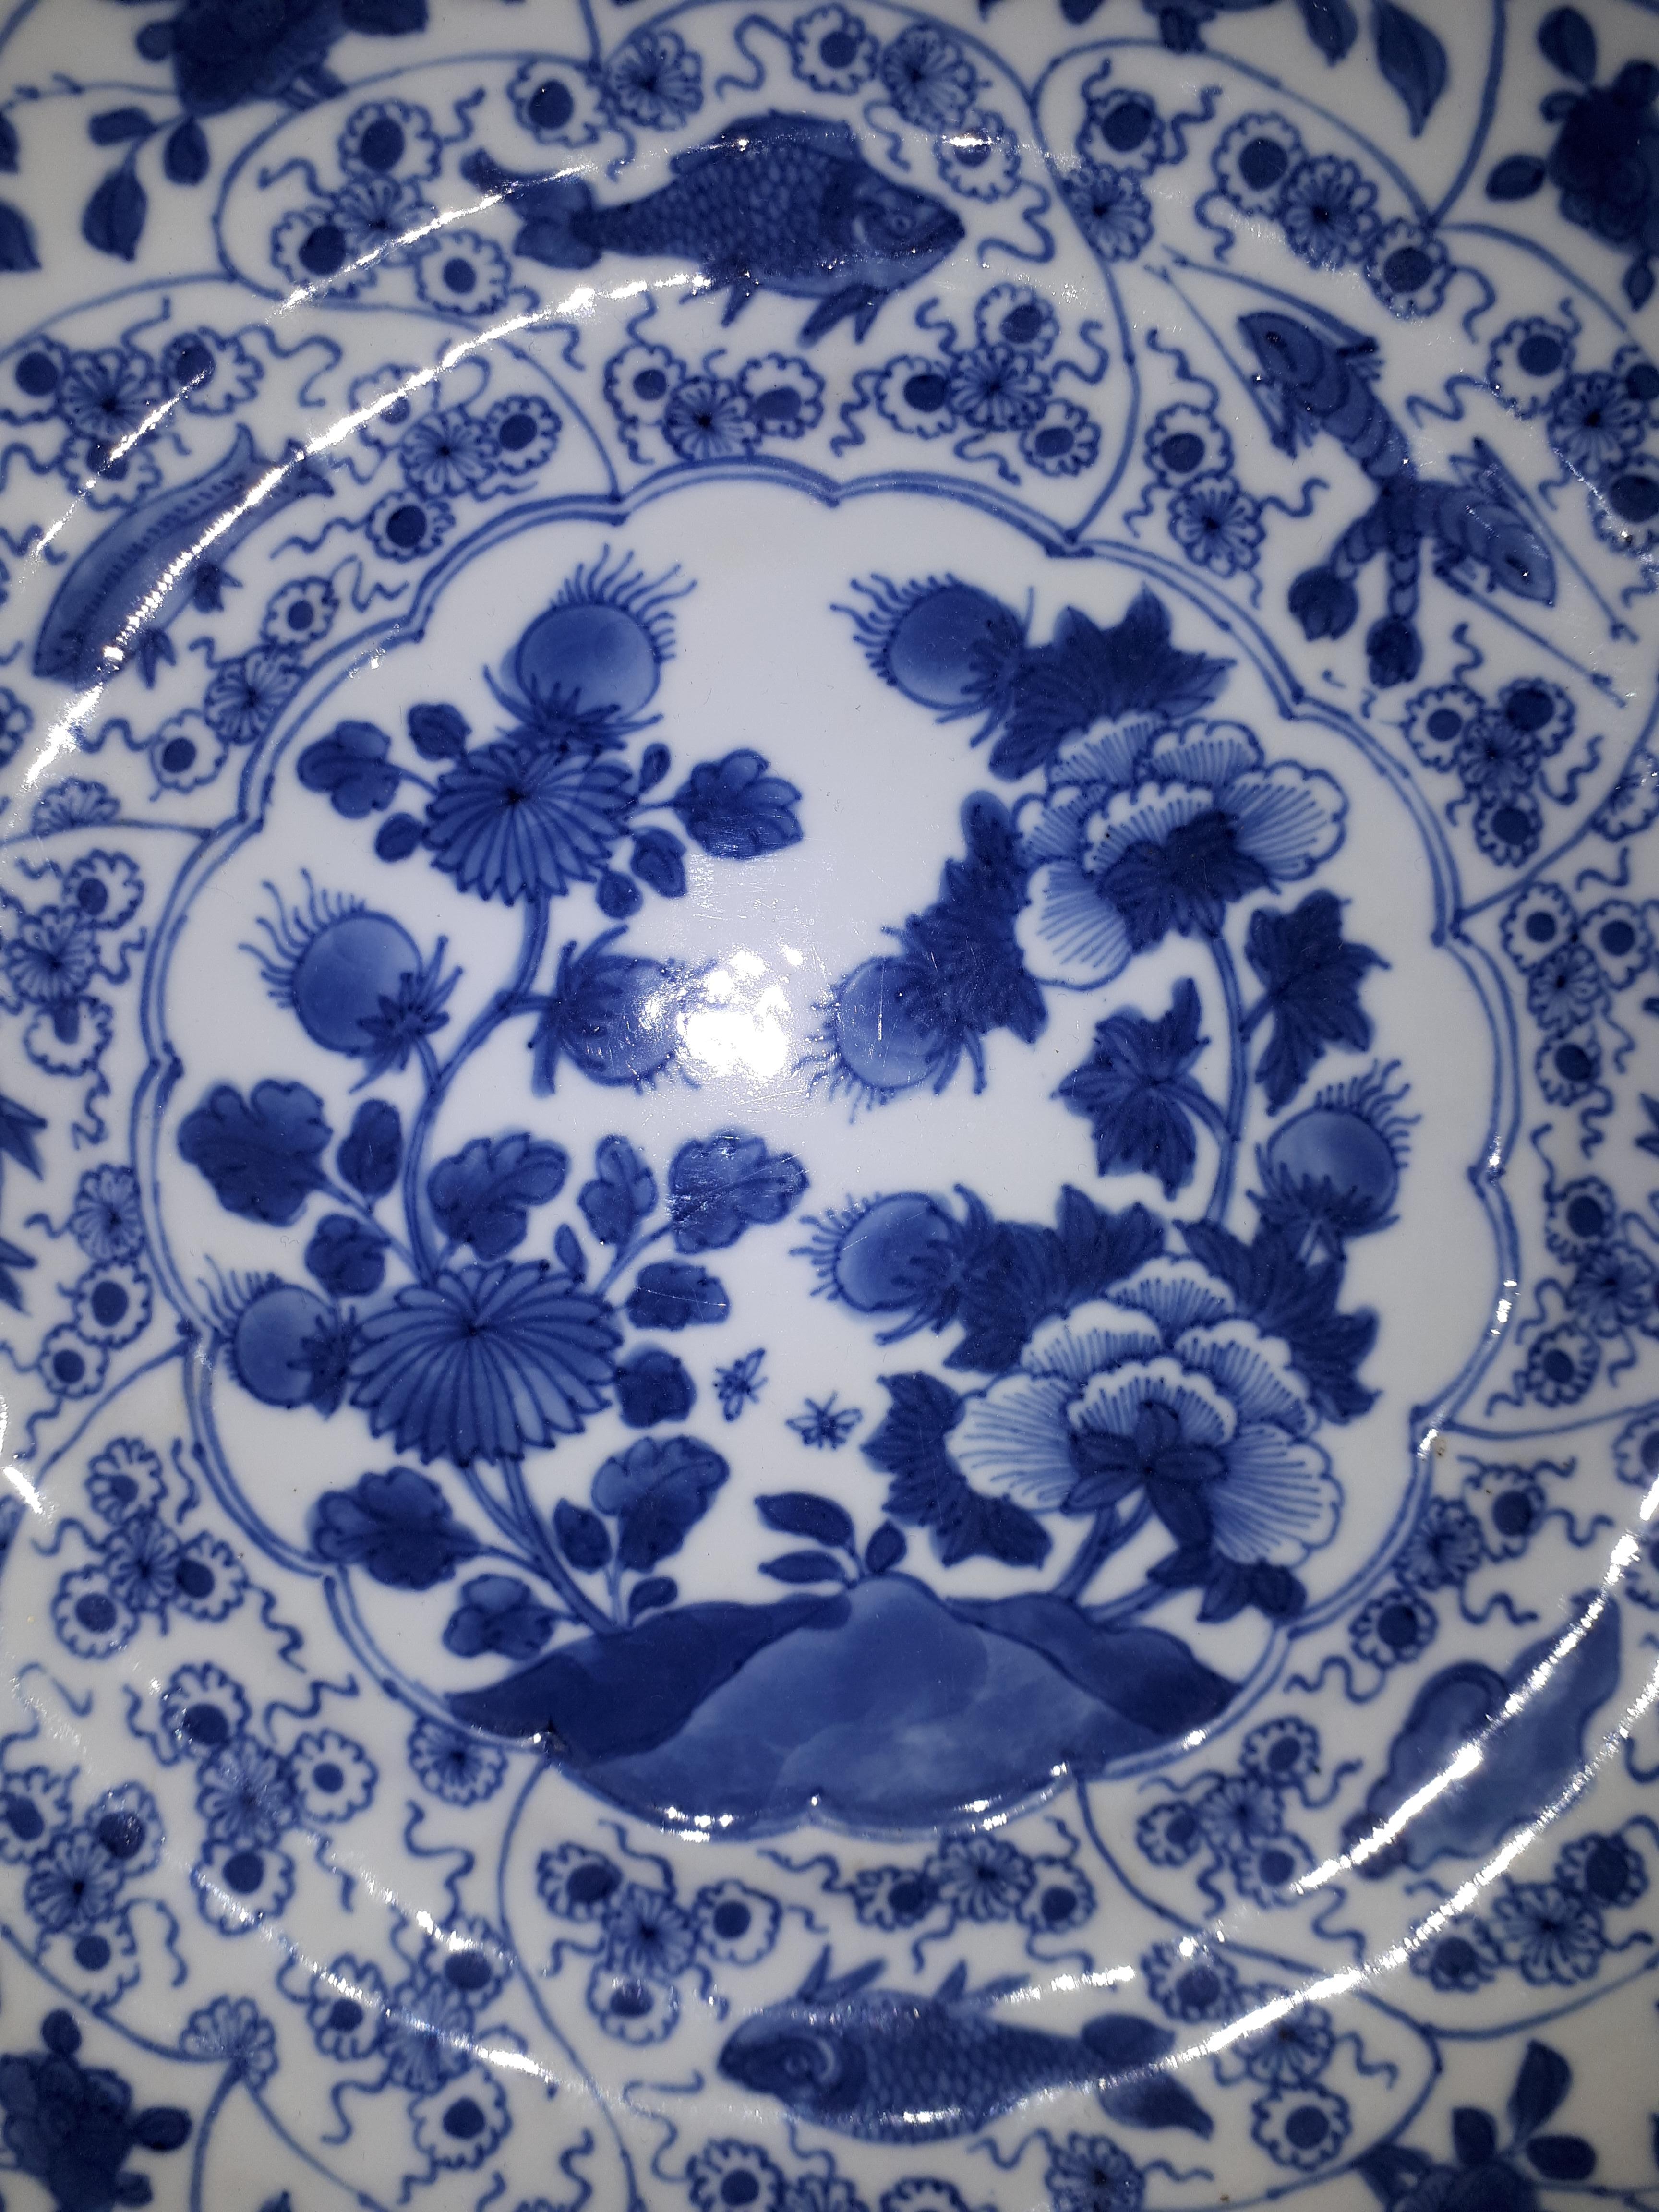 Chinese Blue White Plate, China Kangxi Period 1